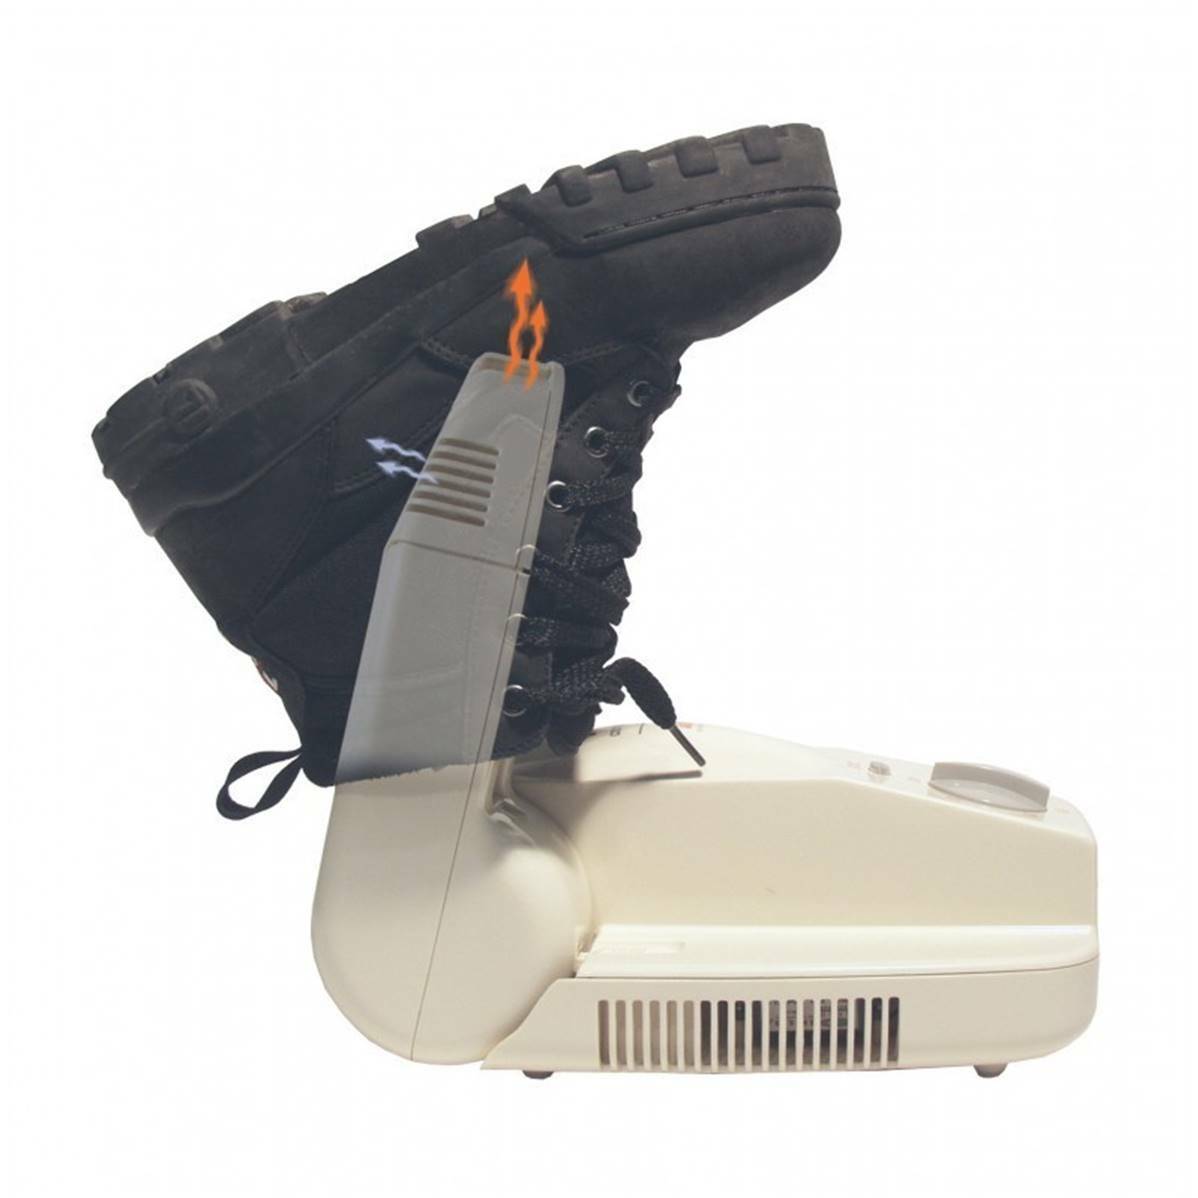 Sèche chaussures de voyage avec système ion antibactérien Alpenheat compact dry ionizer